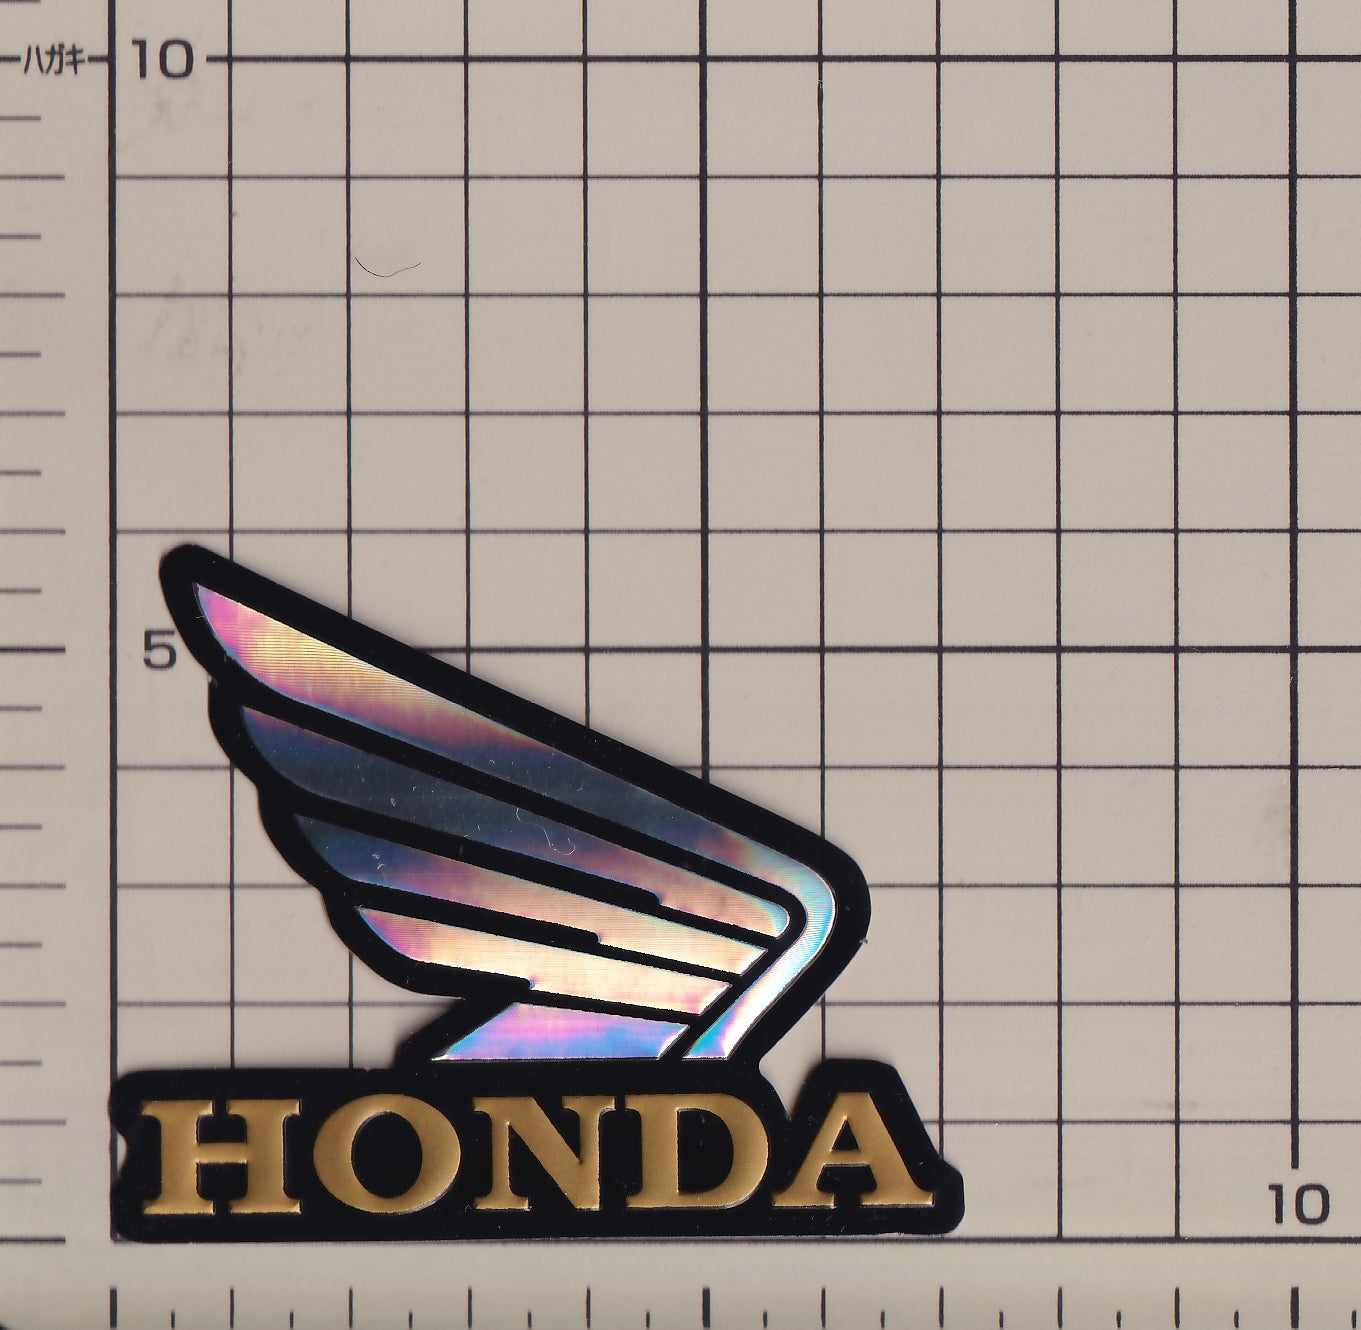 ホンダ ウィング ホログラム ステッカー 対称形あり HONDA sticker  hologram mirror image wing